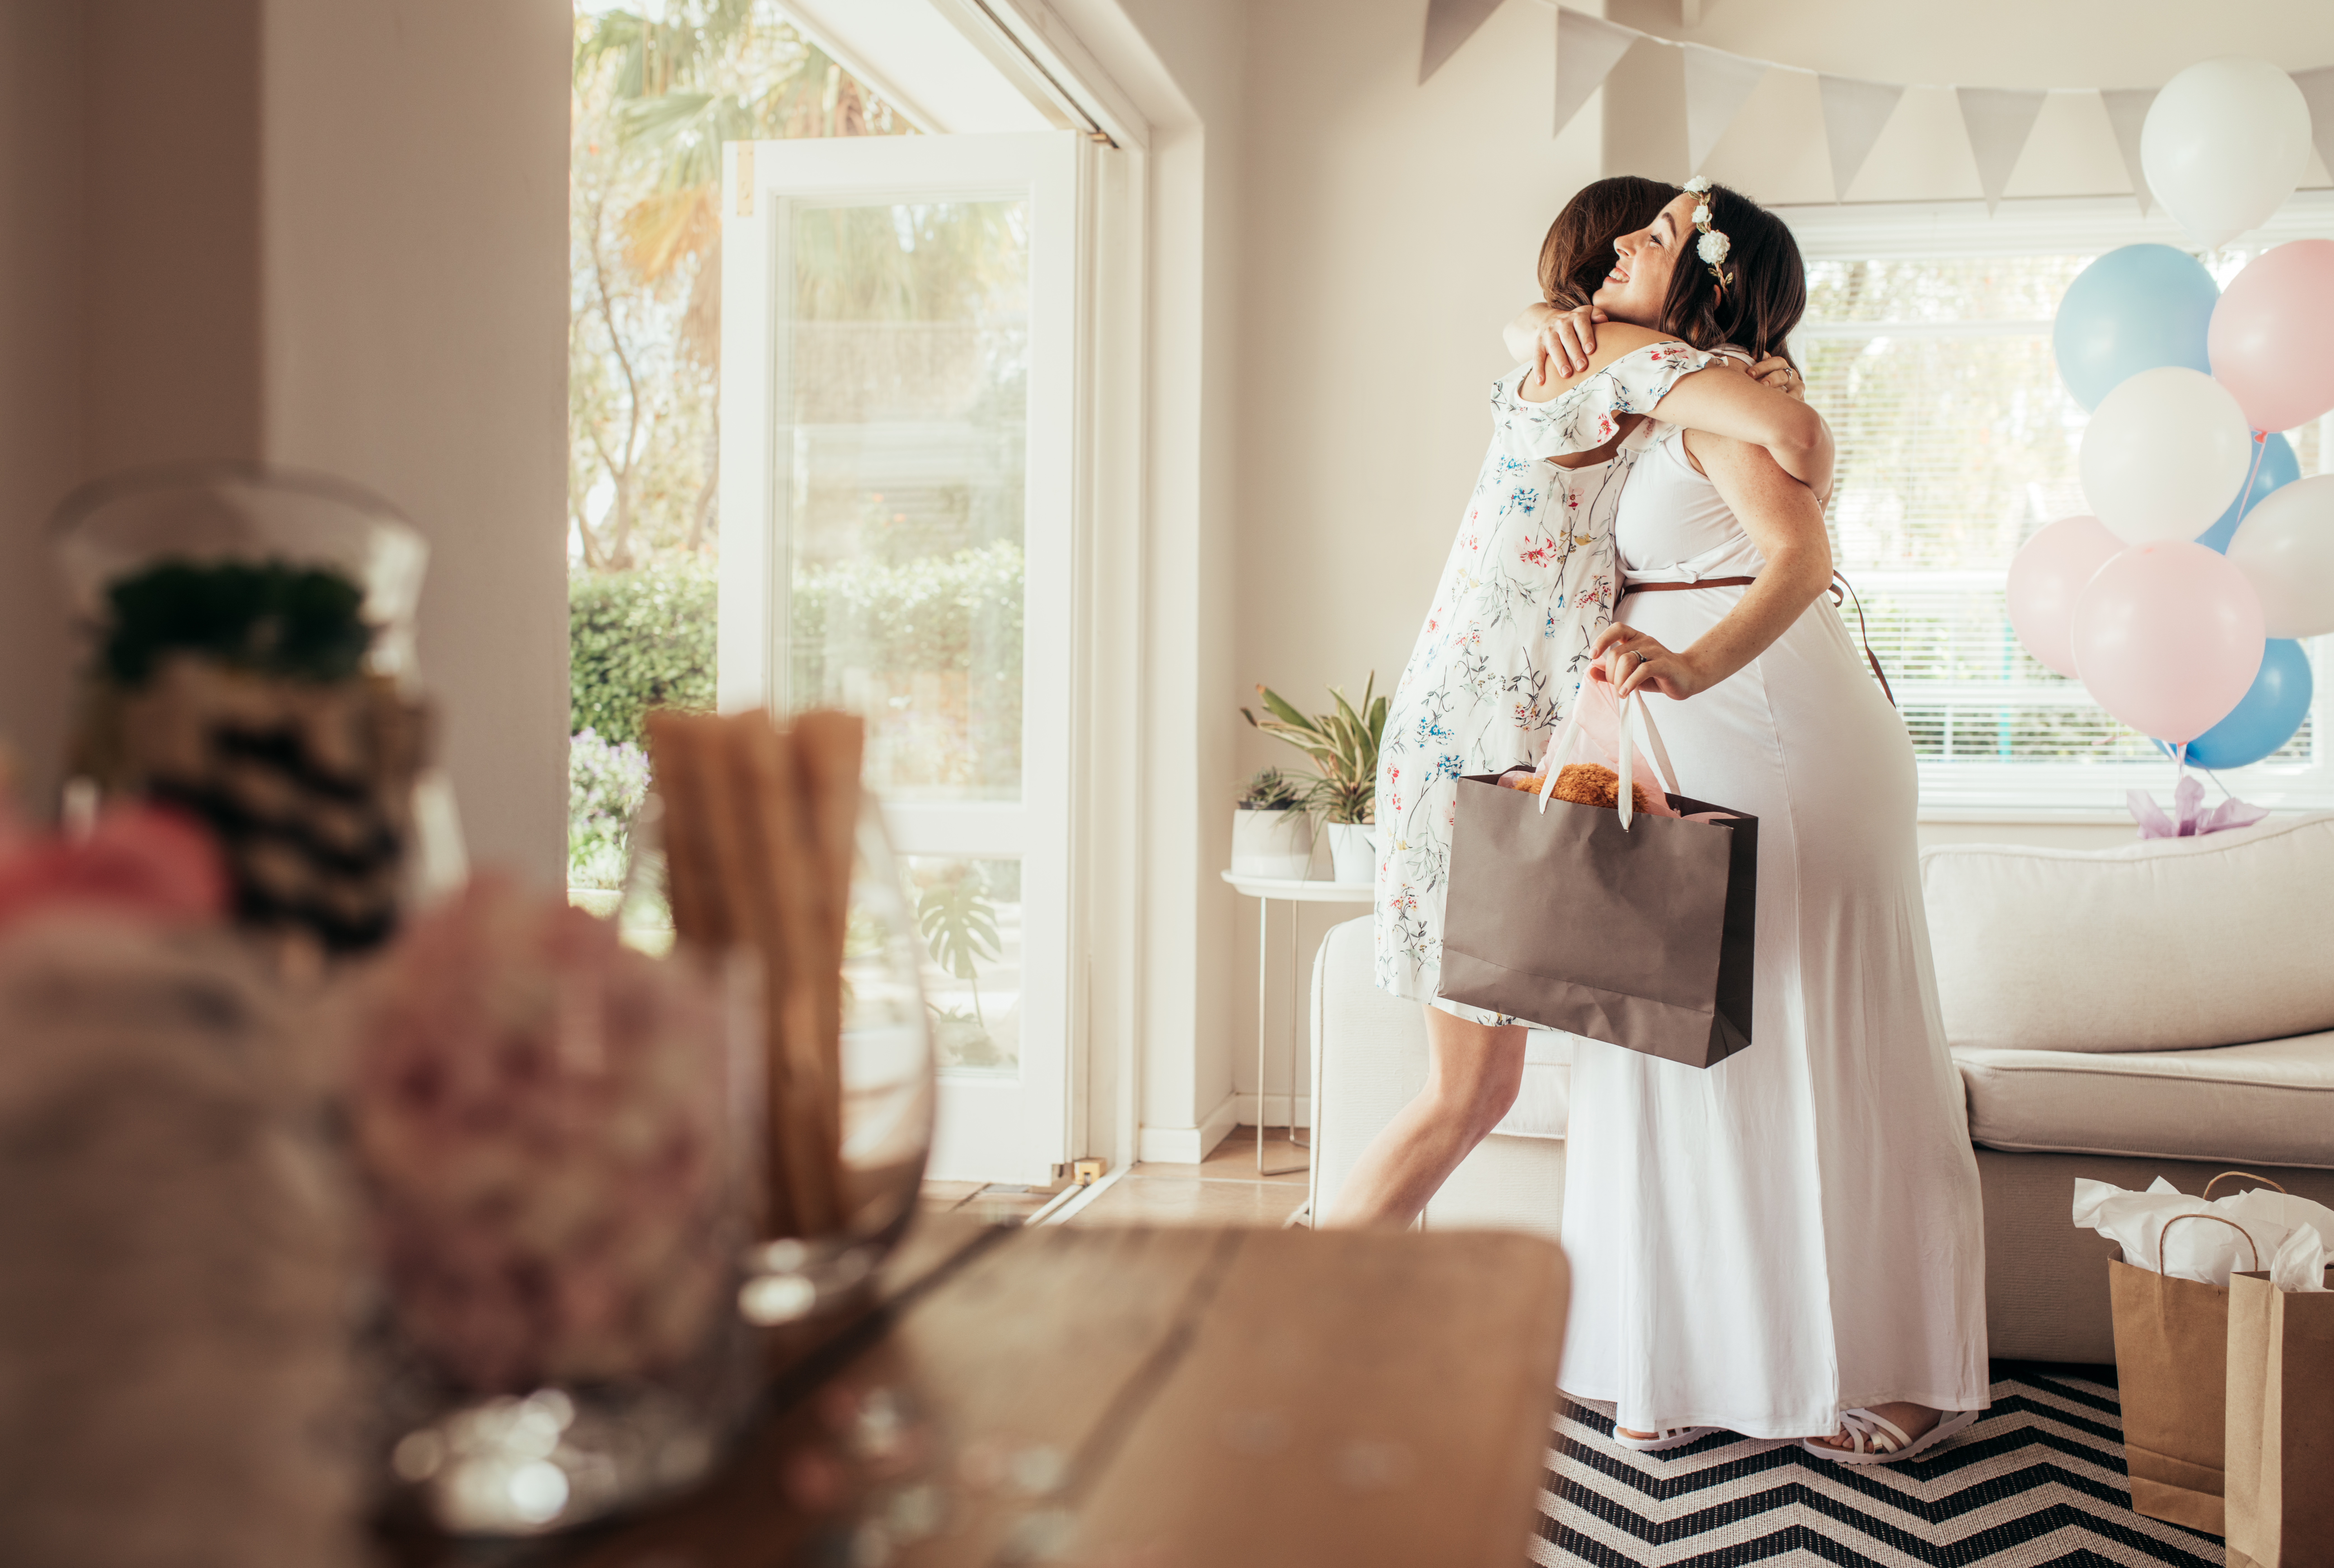 Una mujer abraza a una madre embarazada en un baby shower. | Foto: Shutterstock